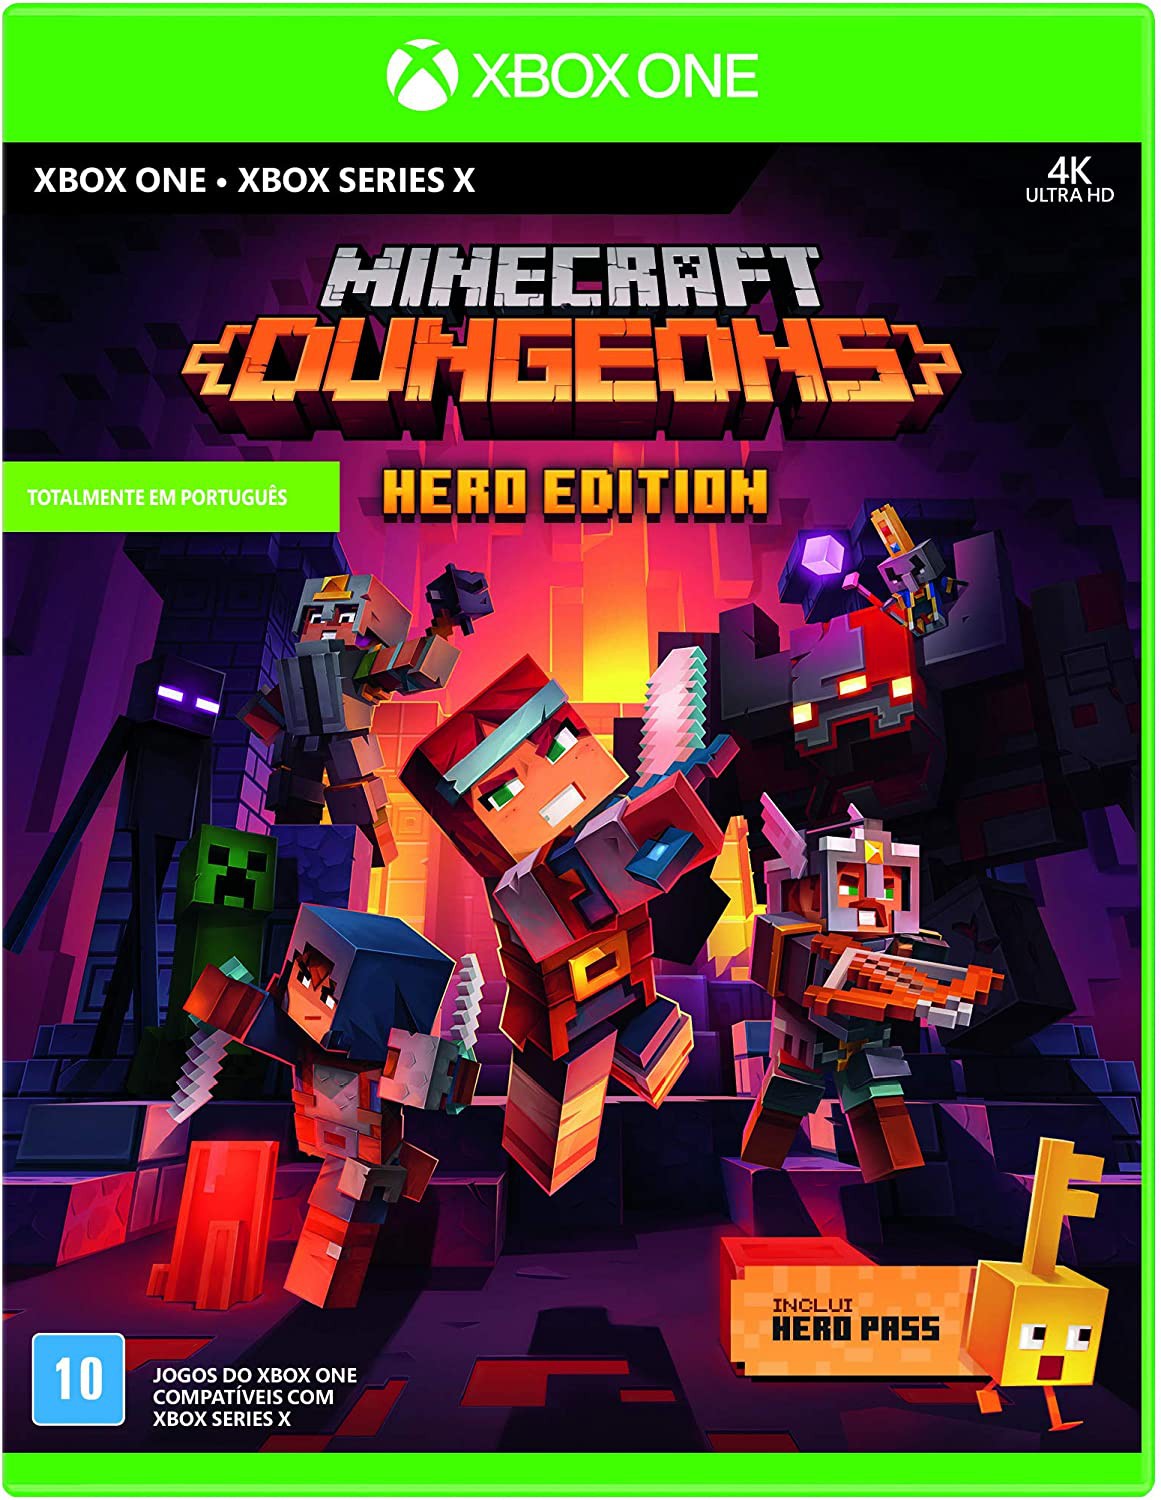 Minecraft Xbox 360 Edition - Um dos melhores jogos da plataforma -  Aproveite